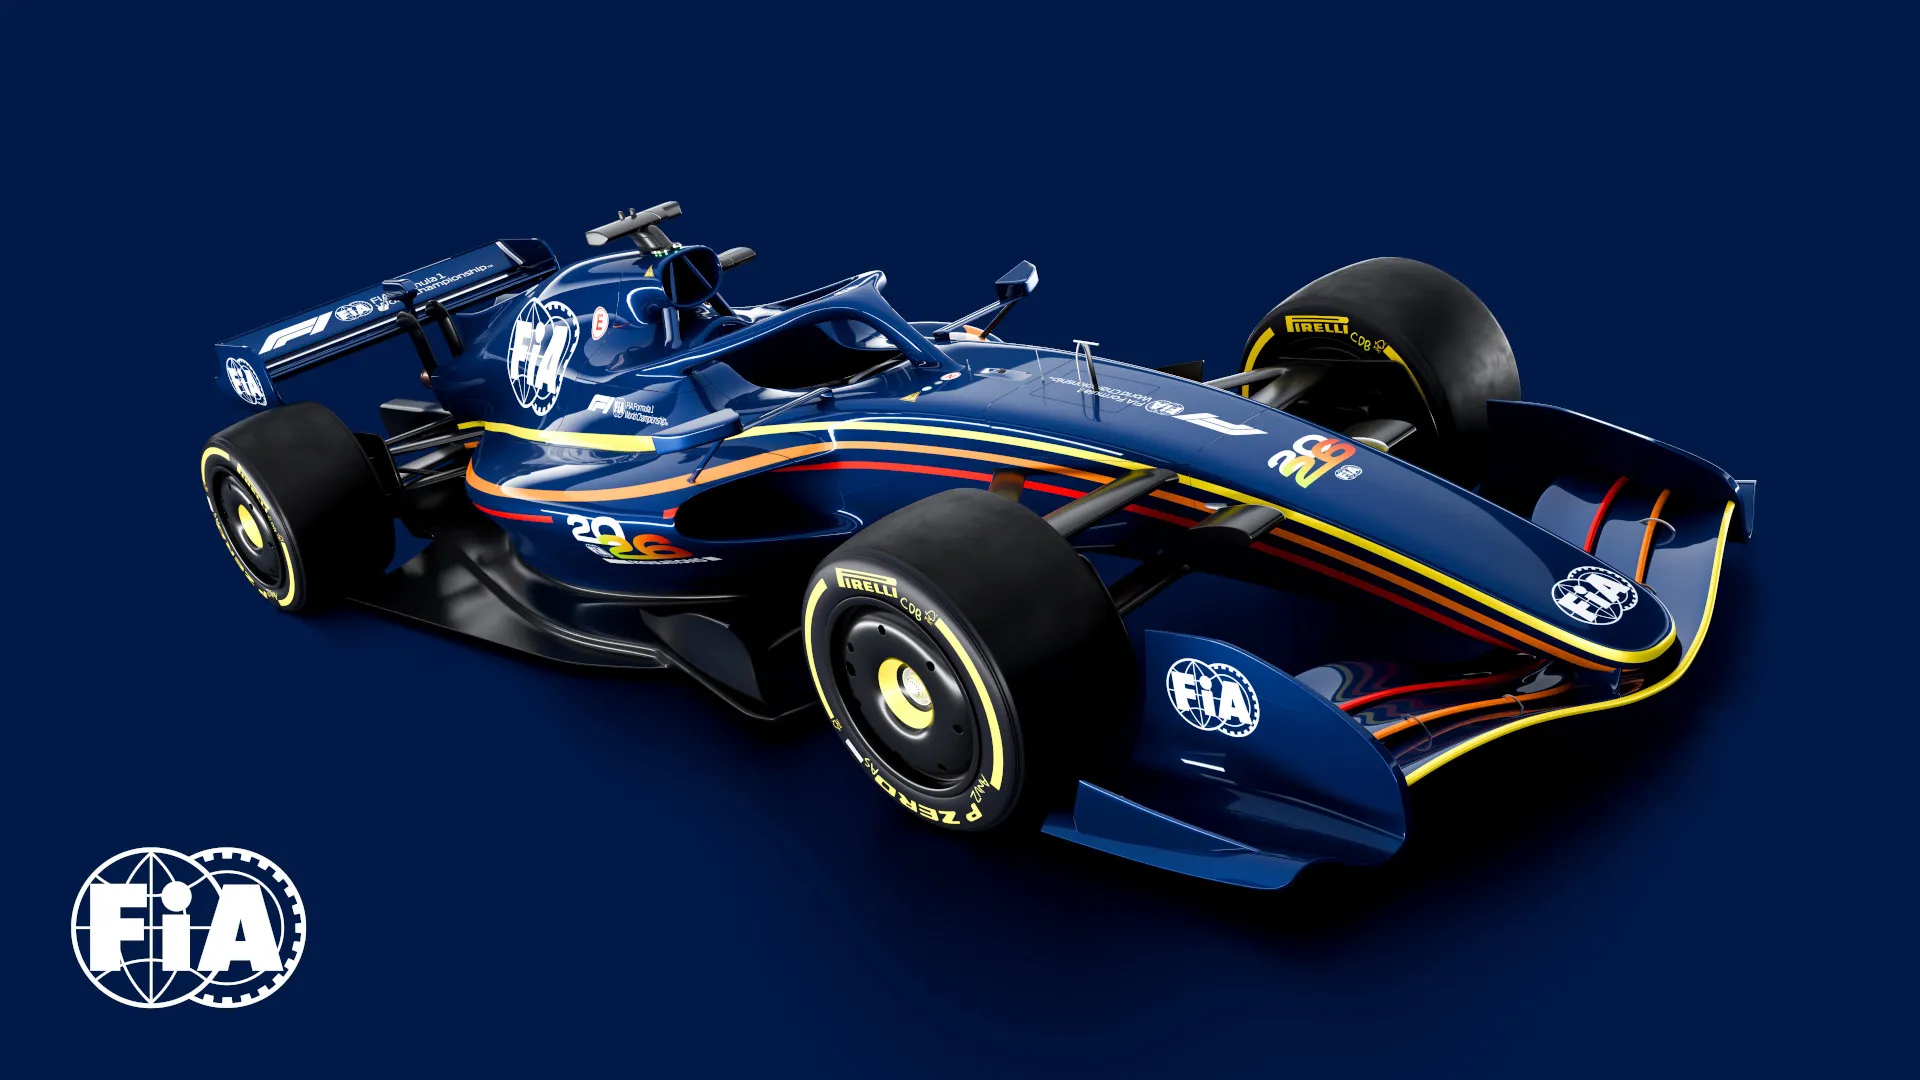 La aerodinámica activa llega a la F1: Descubre el modo X y modo Z